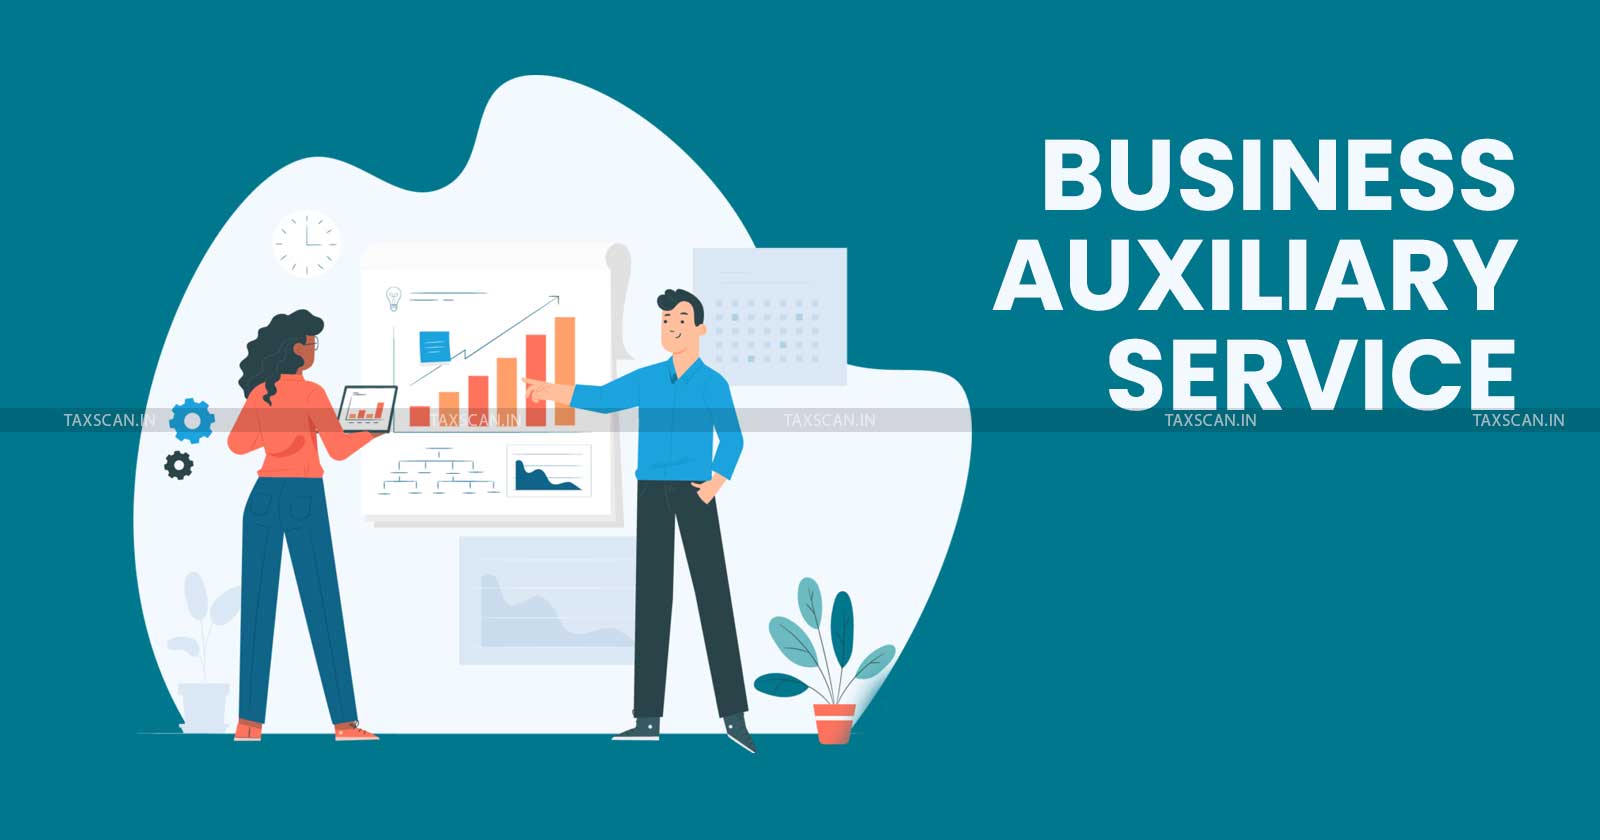 Business Auxiliary Services - Rent-a-cab service - BAS - CESTAT news - CESTAT - taxscan